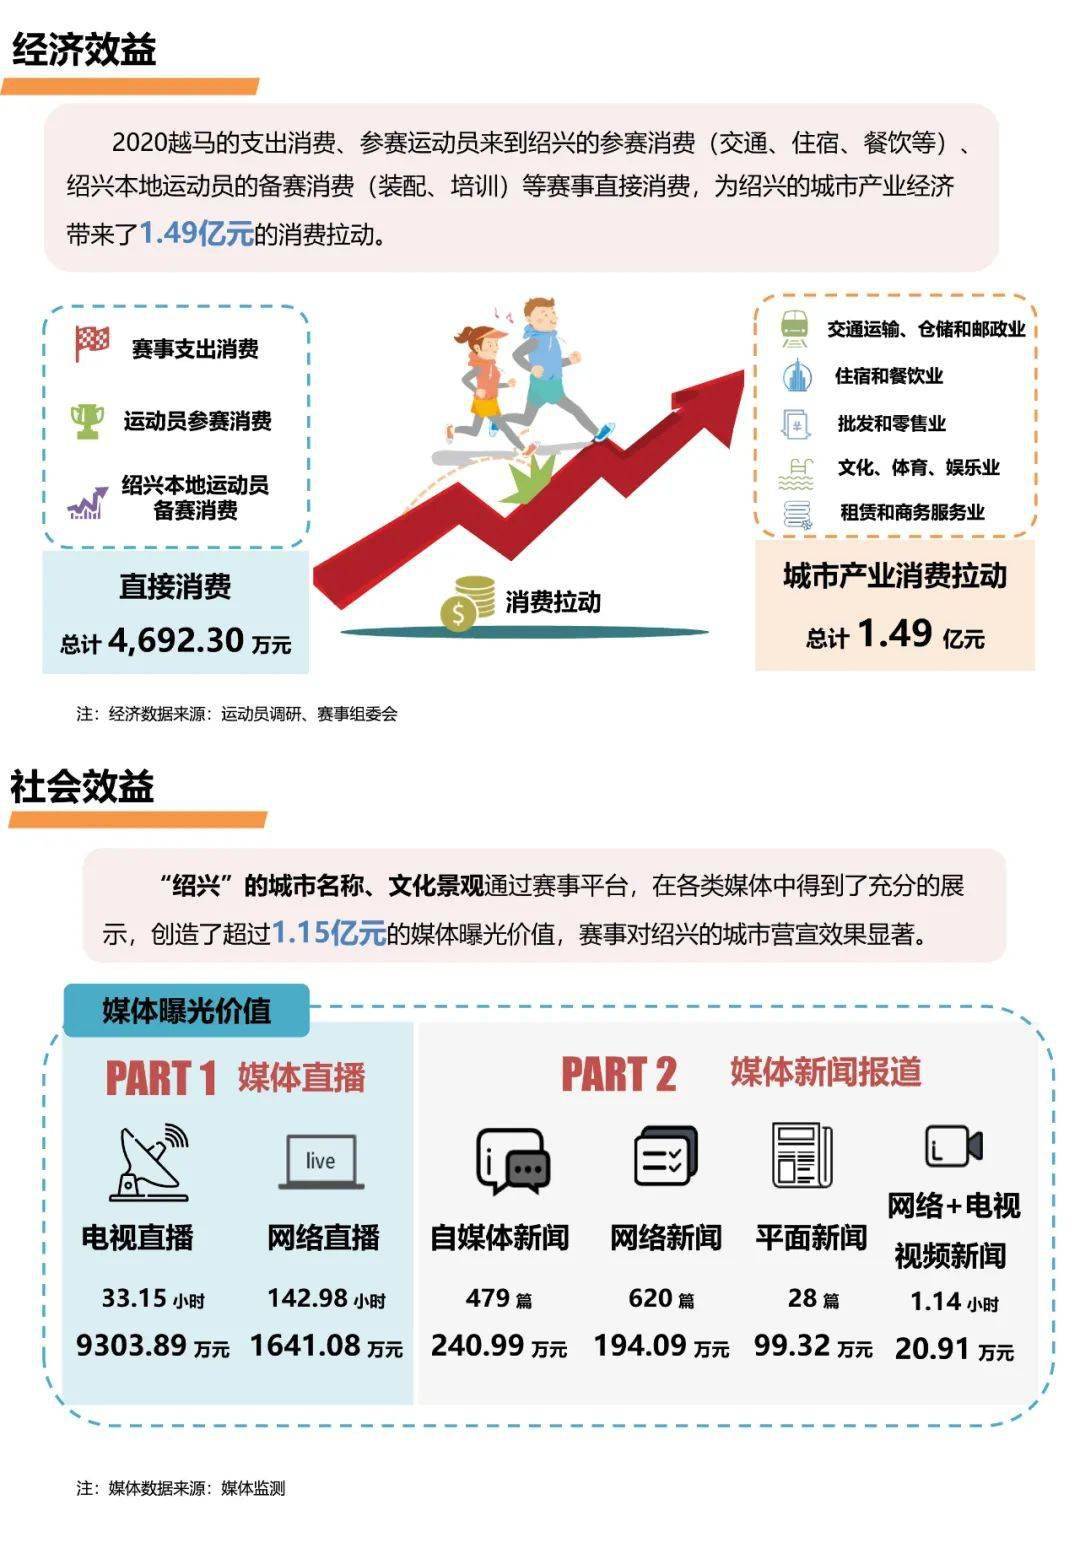 根据浙江省第三产业消费乘数计算获得的经济产出效益